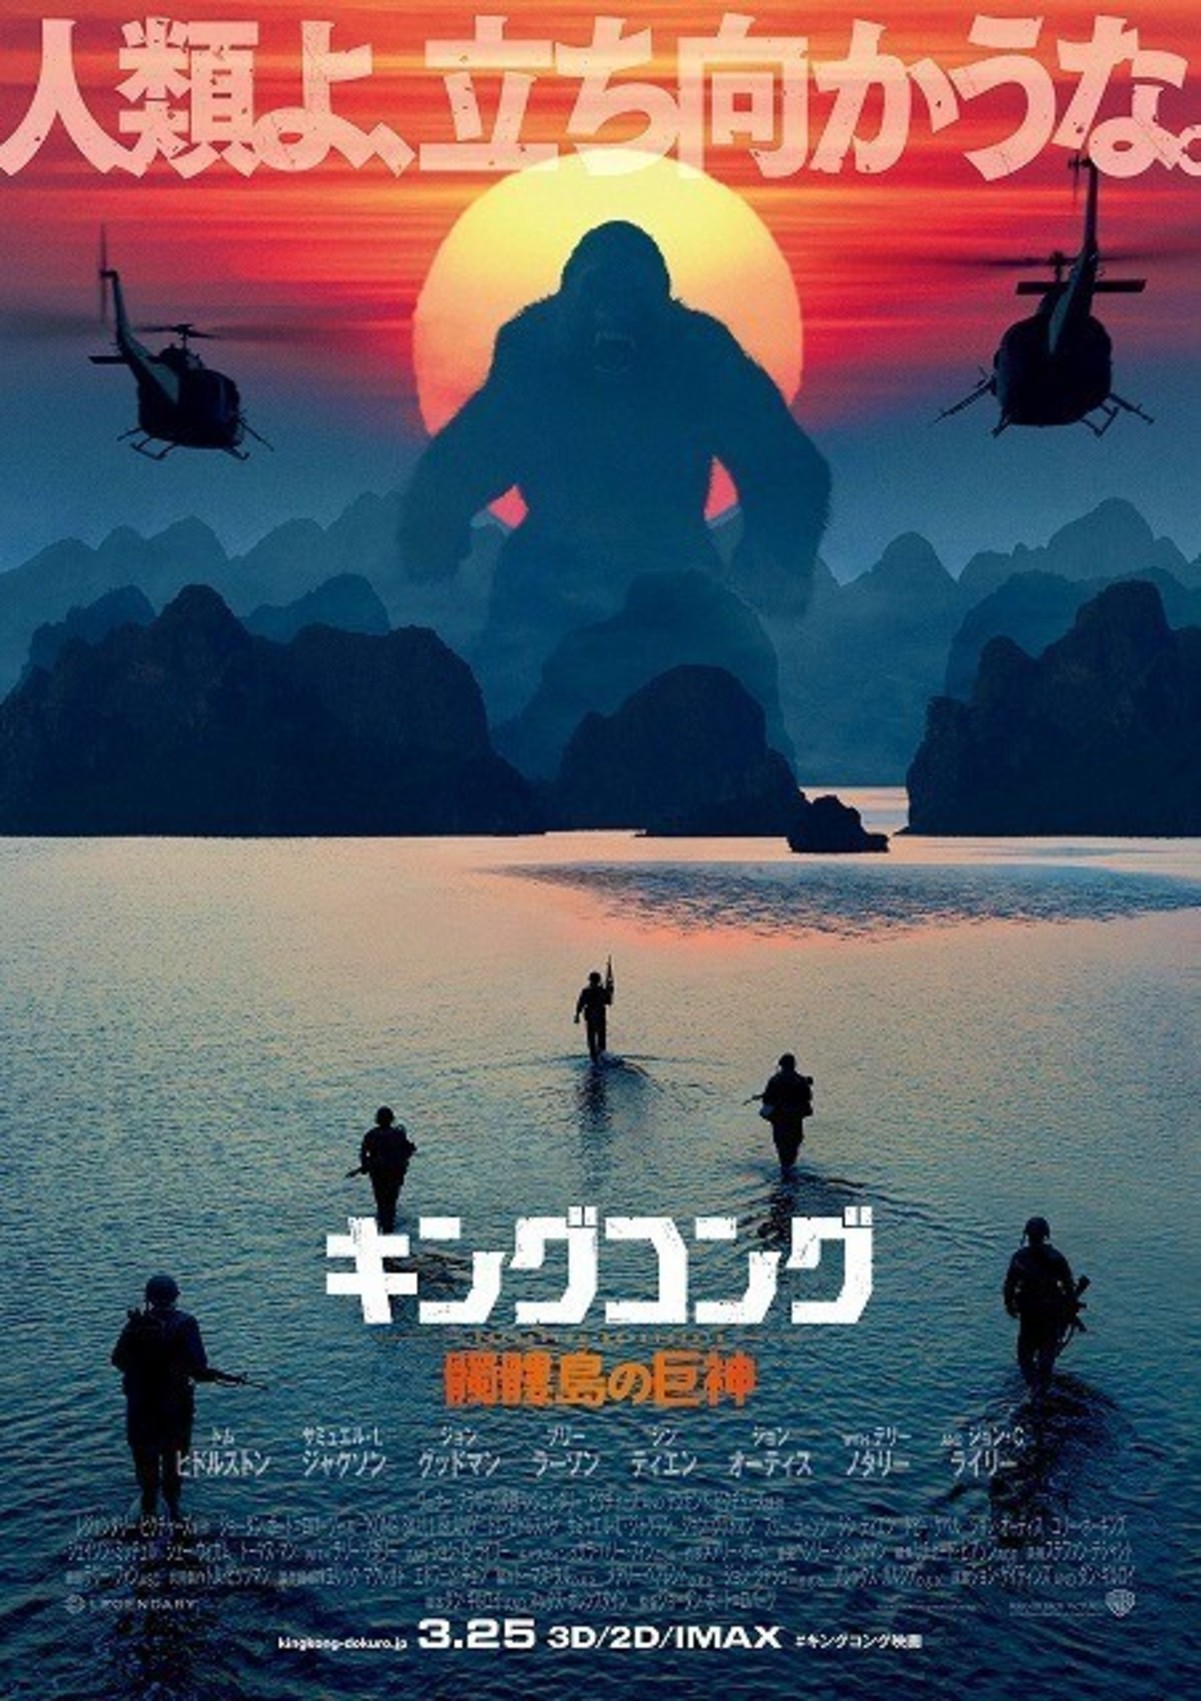 真っ赤な太陽をバックに 巨猿 吠える キングコング 新作ポスター公開 映画ニュース 映画 Com